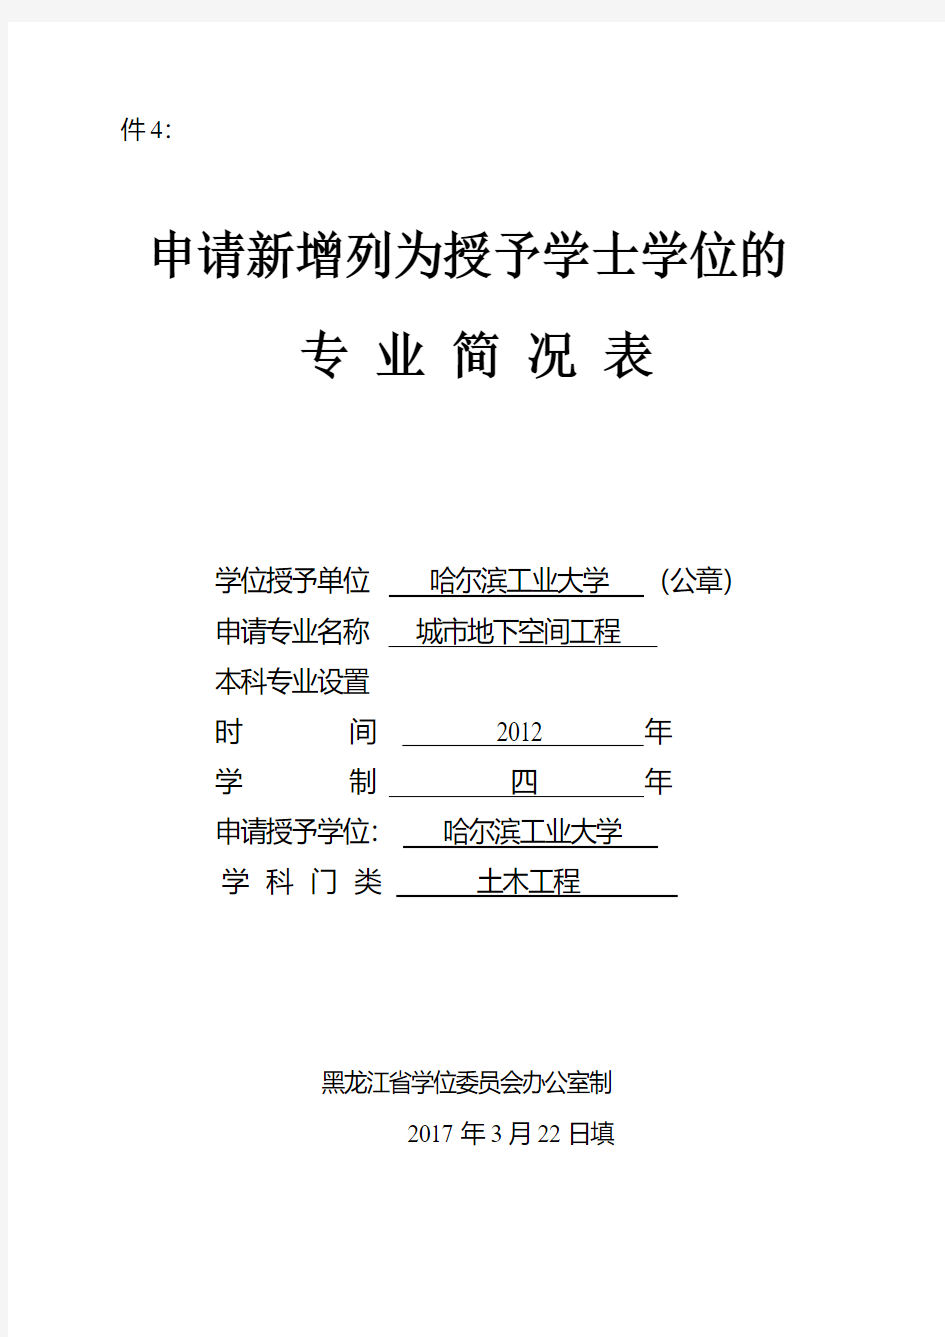 申请学士学位授予权学科专业简况表-哈尔滨工业大学